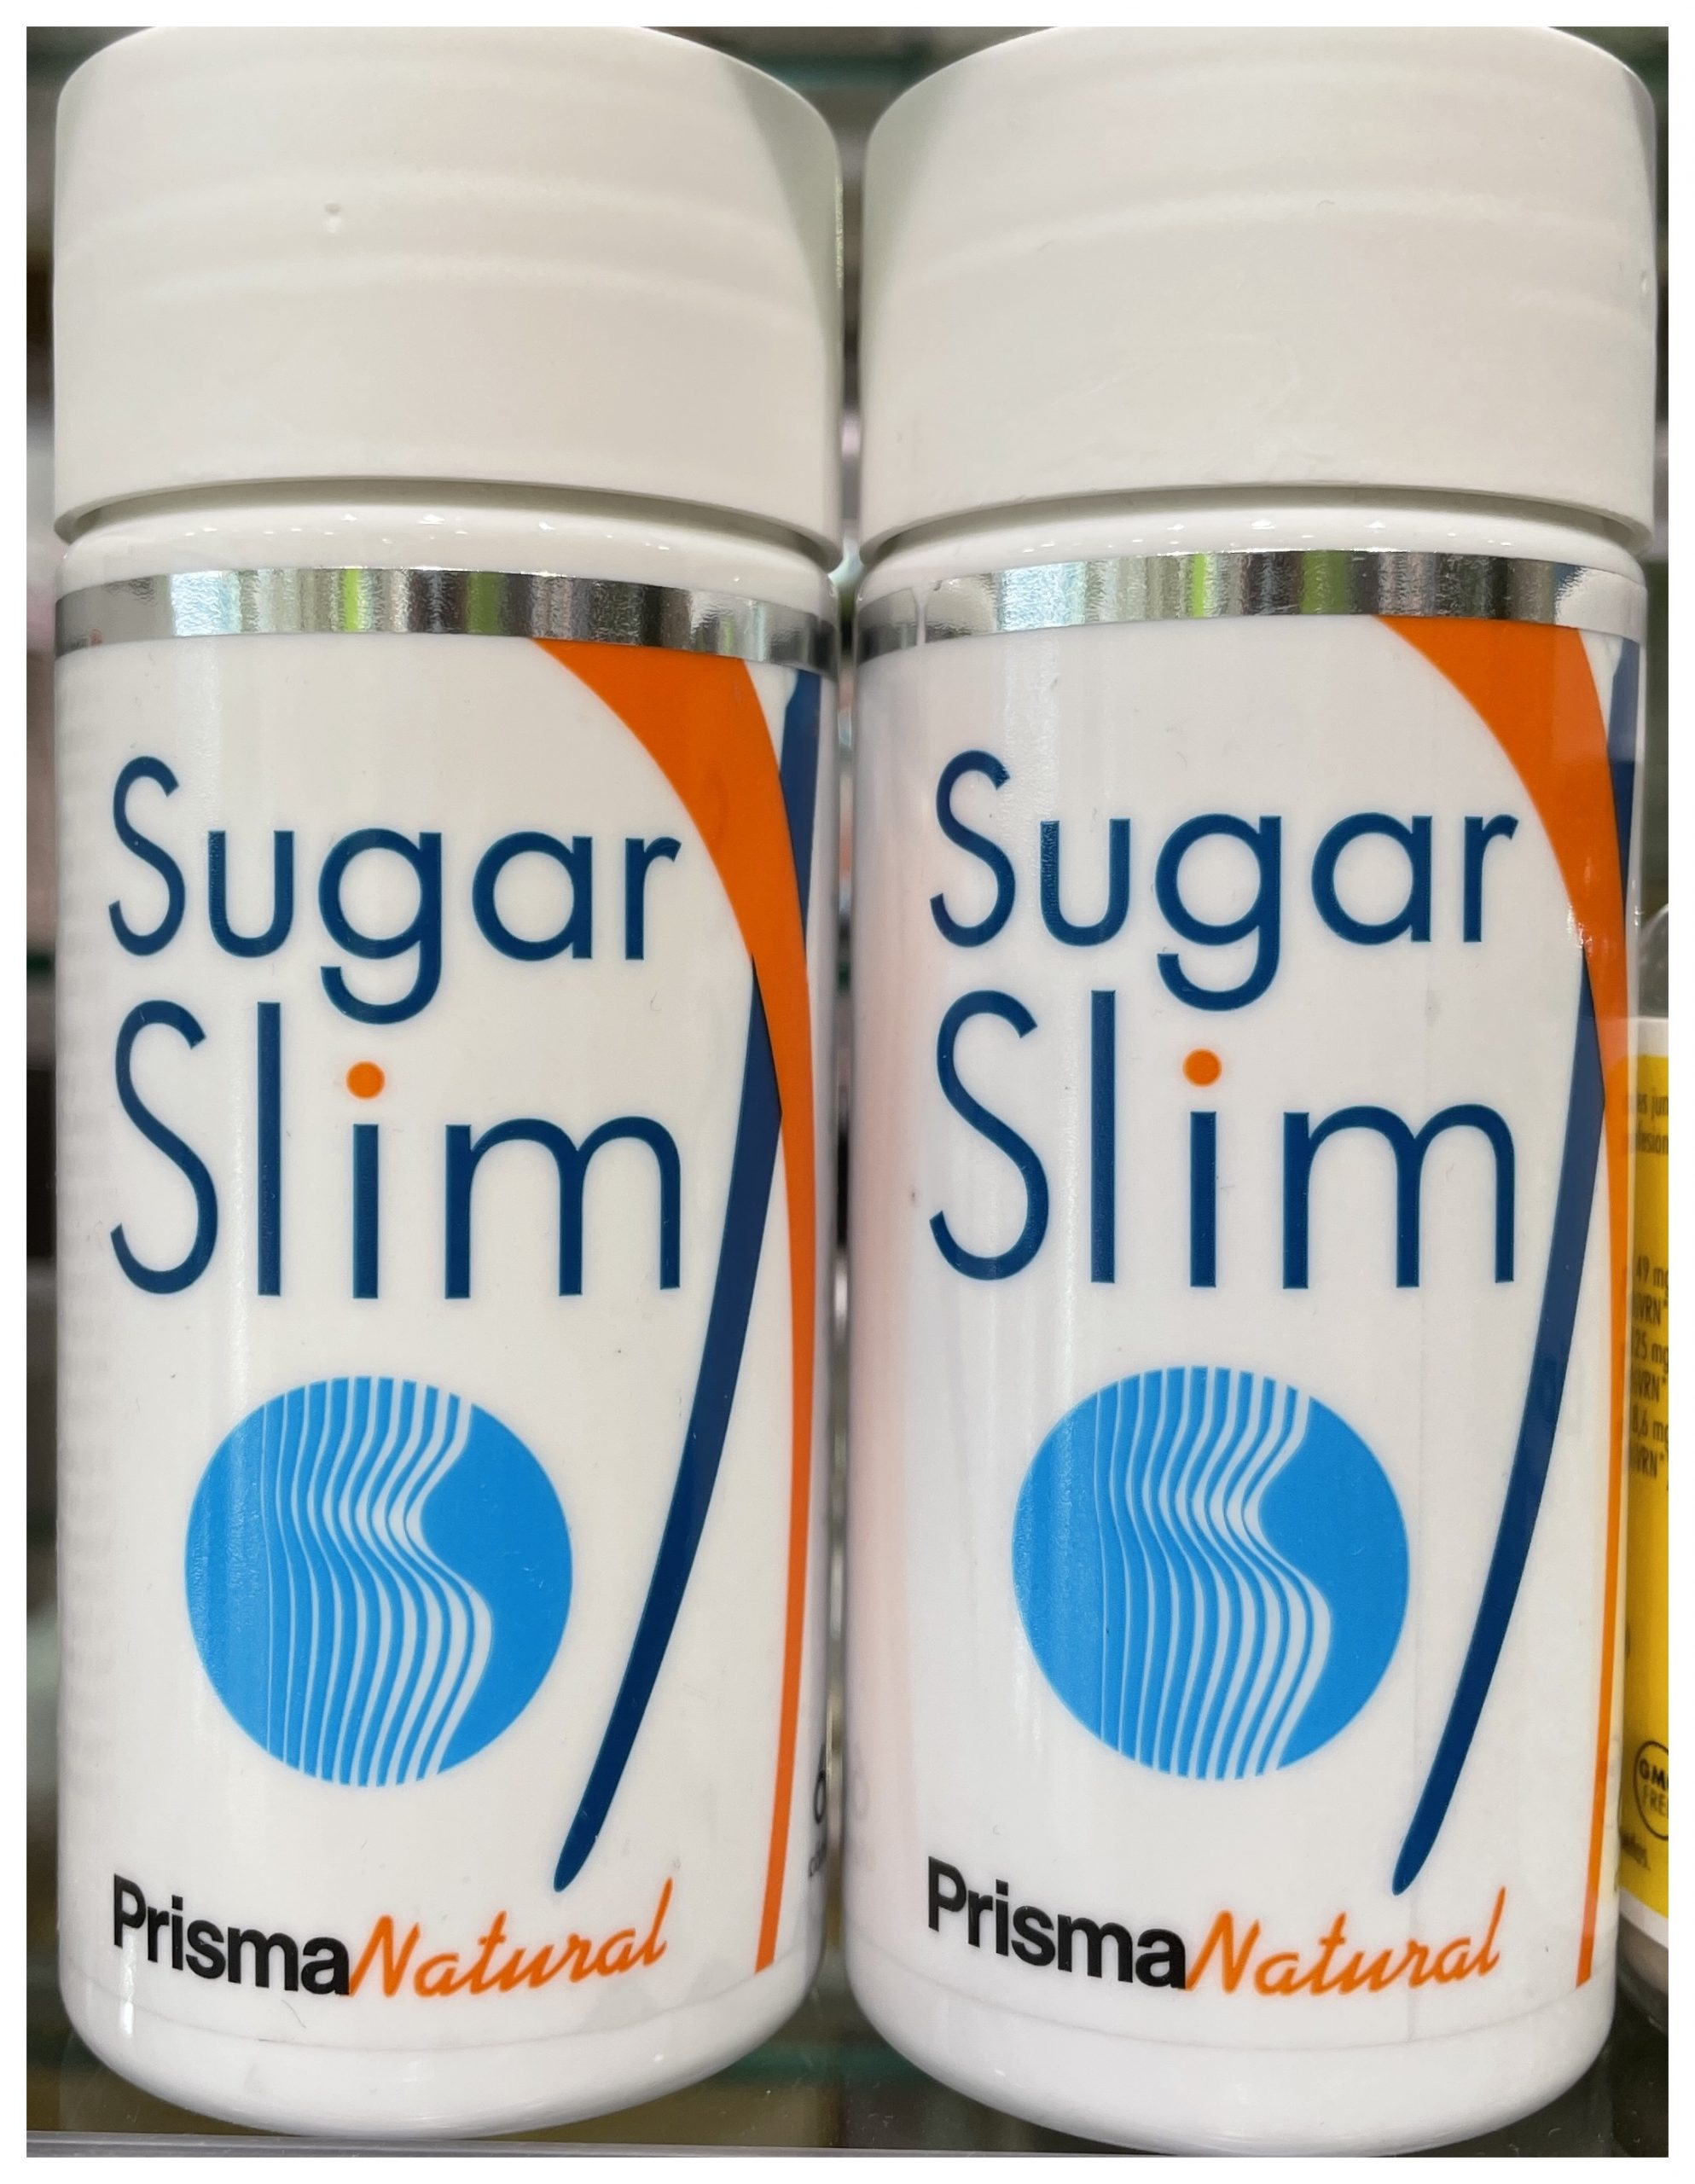 SUGAR SLIM DE PRISMA NATURAL. Prisma Natural presenta Sugar Slim , cuyo componente principal, Sugarlock®, el cual contribuye a disminuir la ingesta de calorías en las comidas ricas en Hidratos de Carbono y regular el nivel de Glucosa en sangre